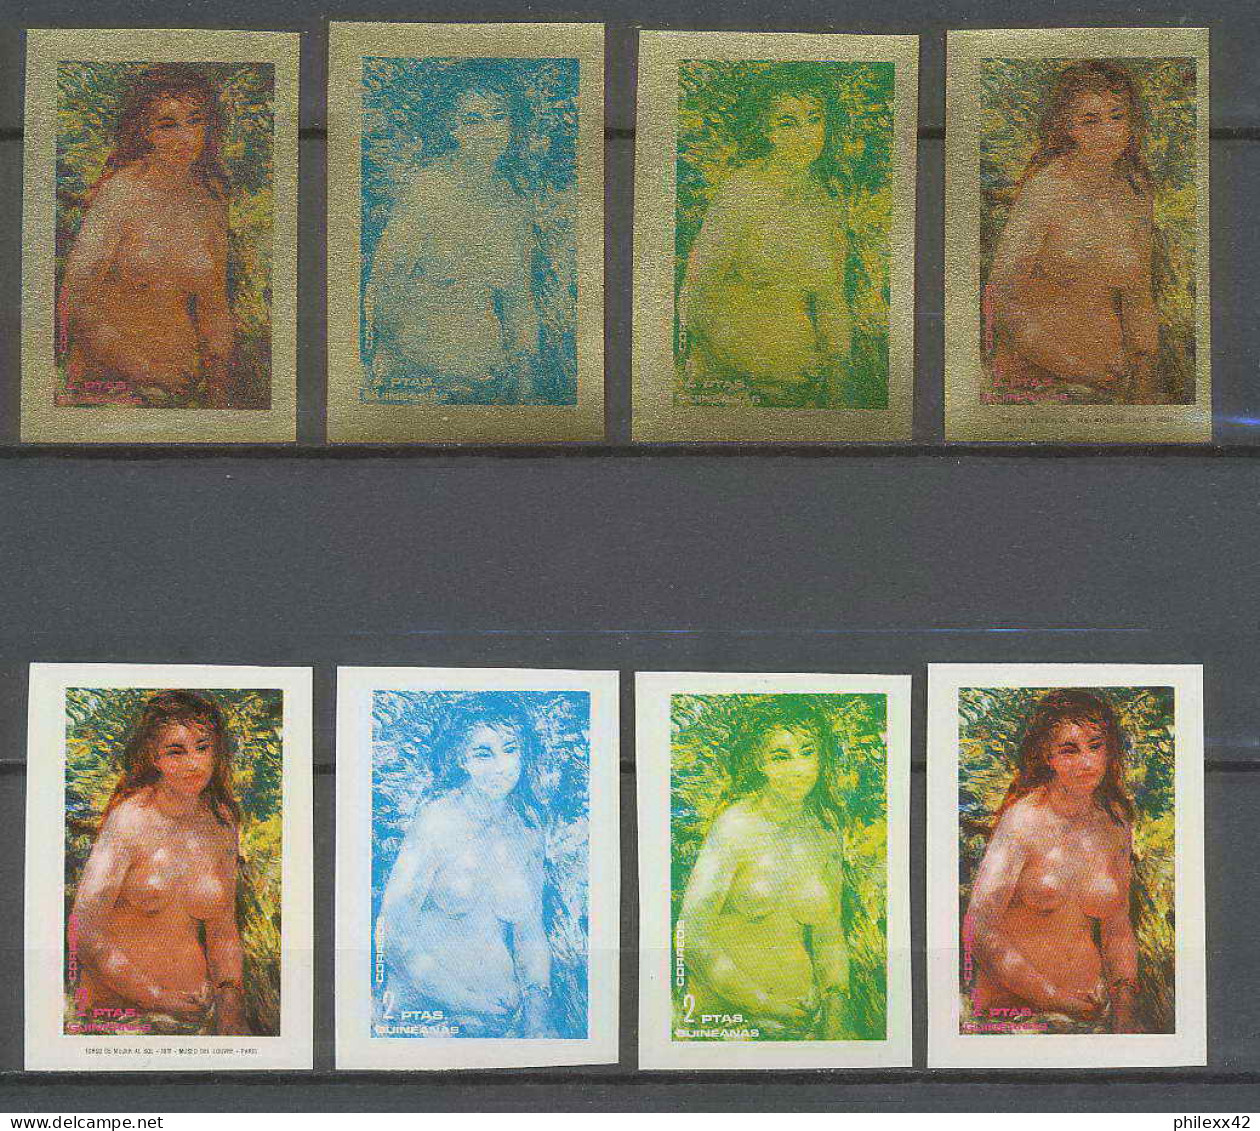 Guinée équatoriale Guinea 227 N°209 Renoir Essai Proof Non Dentelé Imperf Orate Tableau Painting Nus Nudes MNH ** - Desnudos